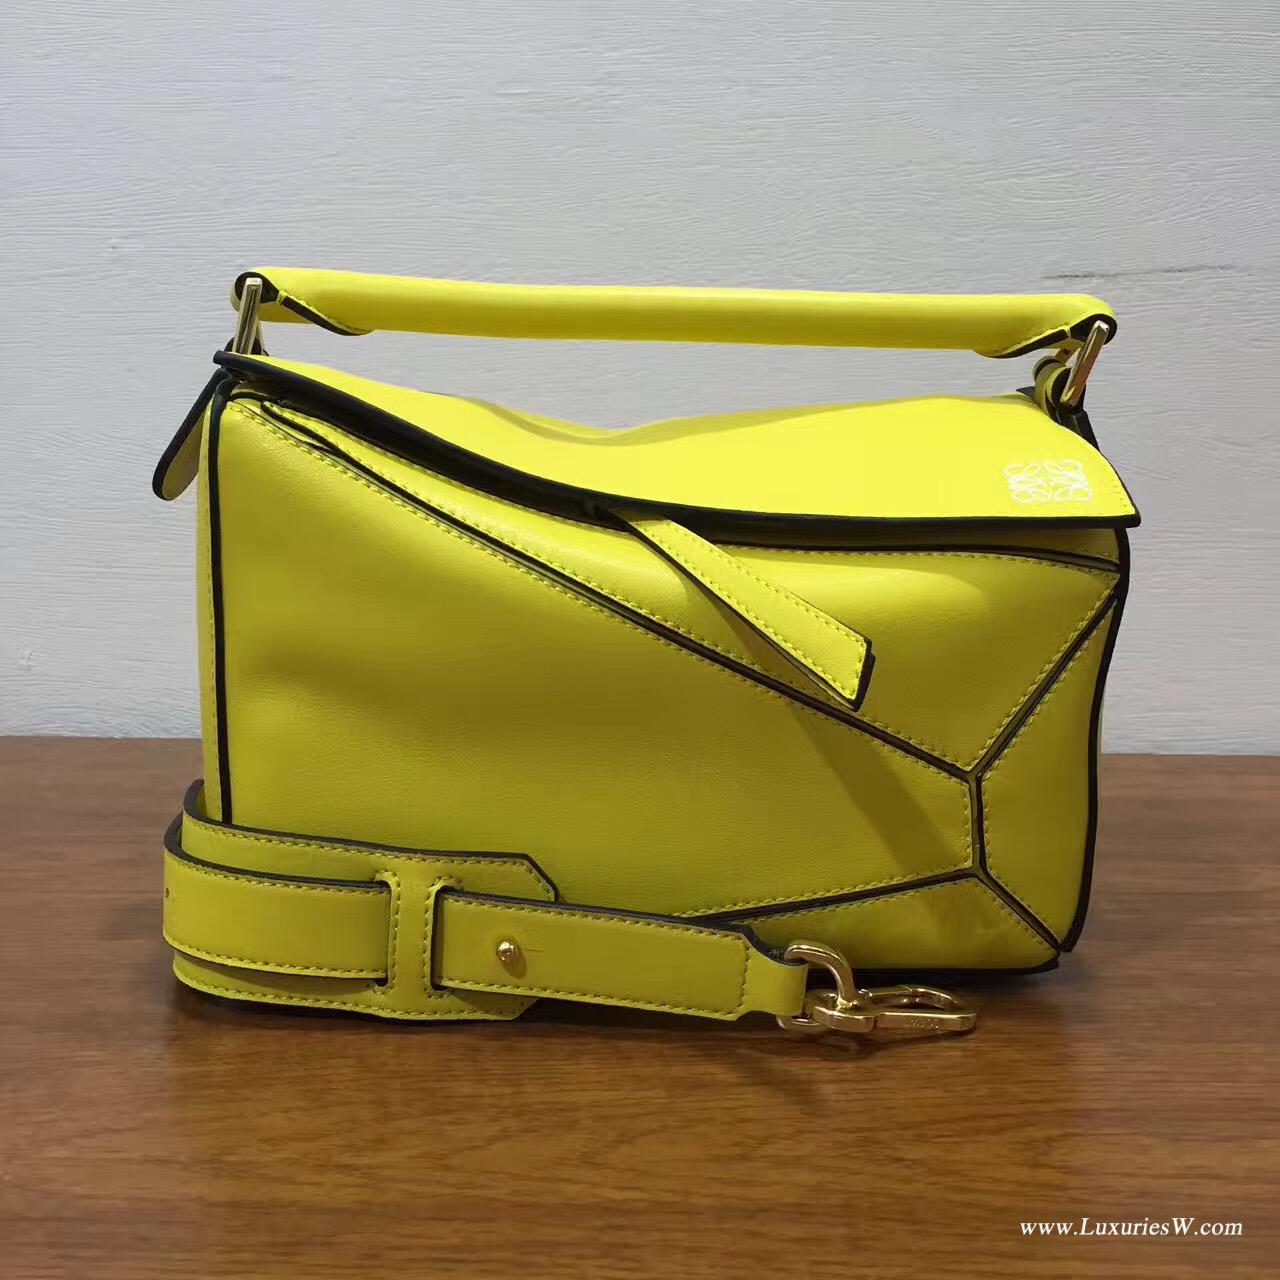 羅意威女包官網 LOEWE Mini Puzzle Bag 柠檬黄 長方體形狀 折疊幾何包